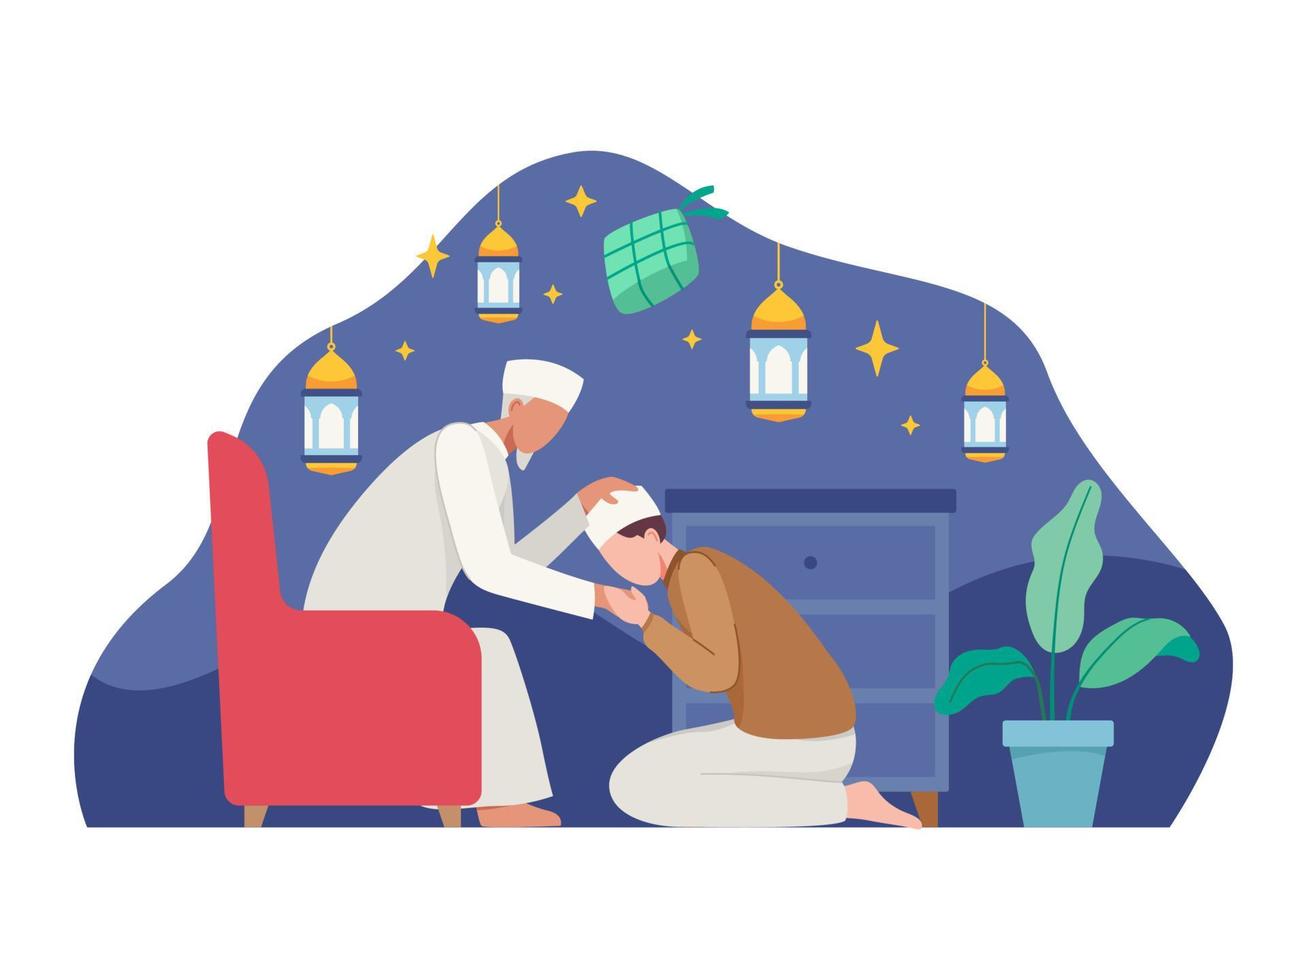 ilustração do conceito de ramadan kareem e eid mubarak vetor